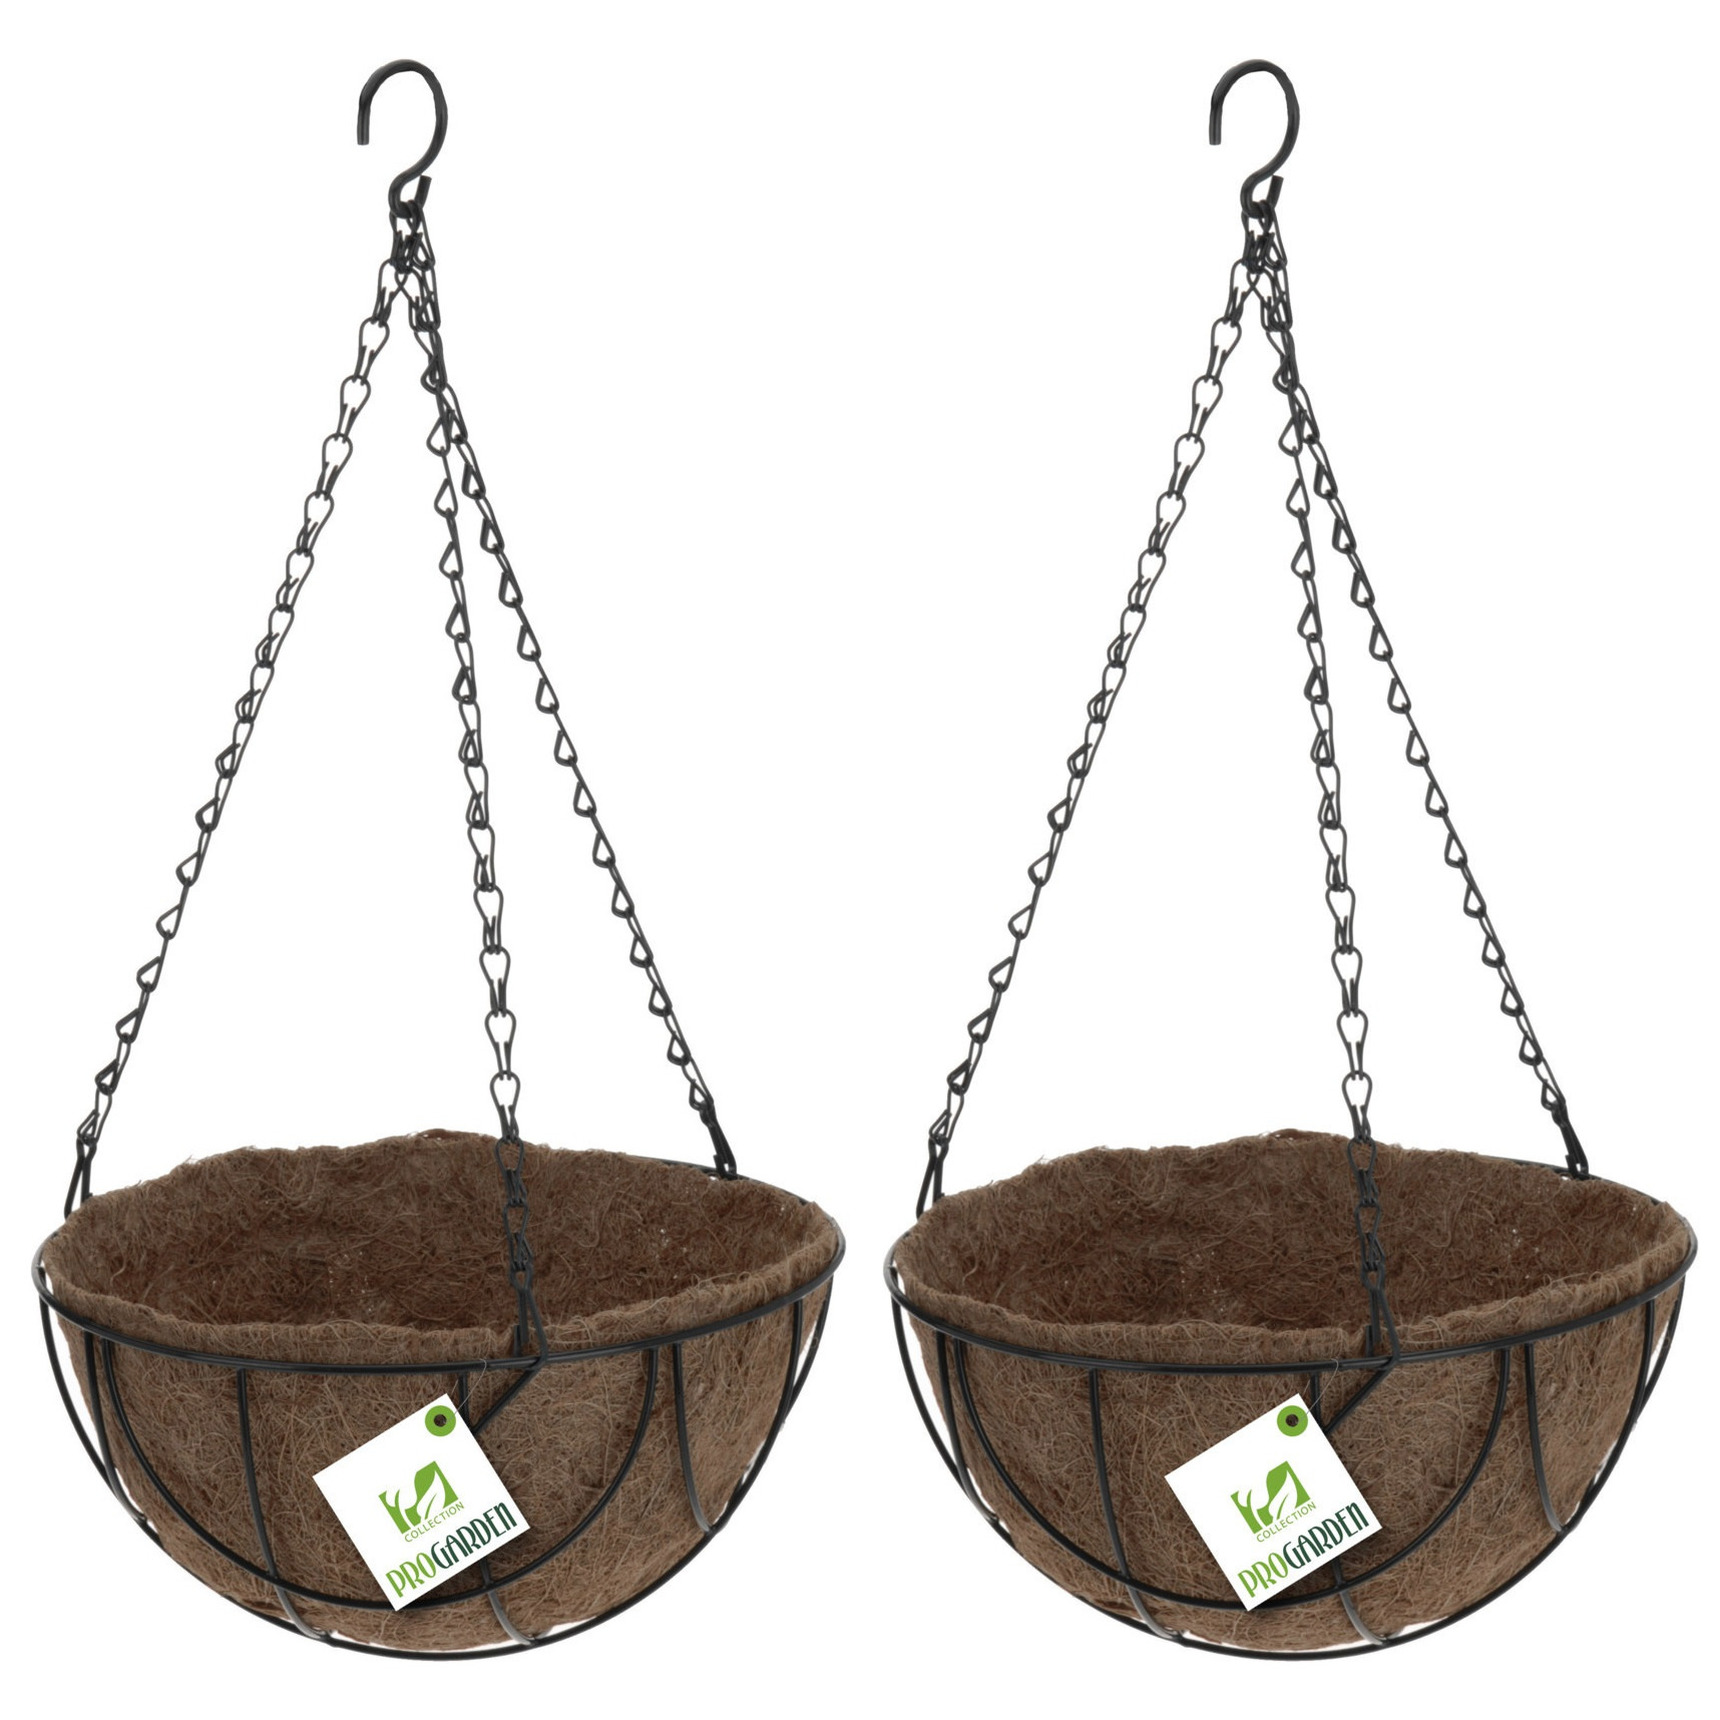 Merkloos 2x stuks metalen hanging baskets / plantenbakken zwart met ketting 25 cm - hangende bloemen -